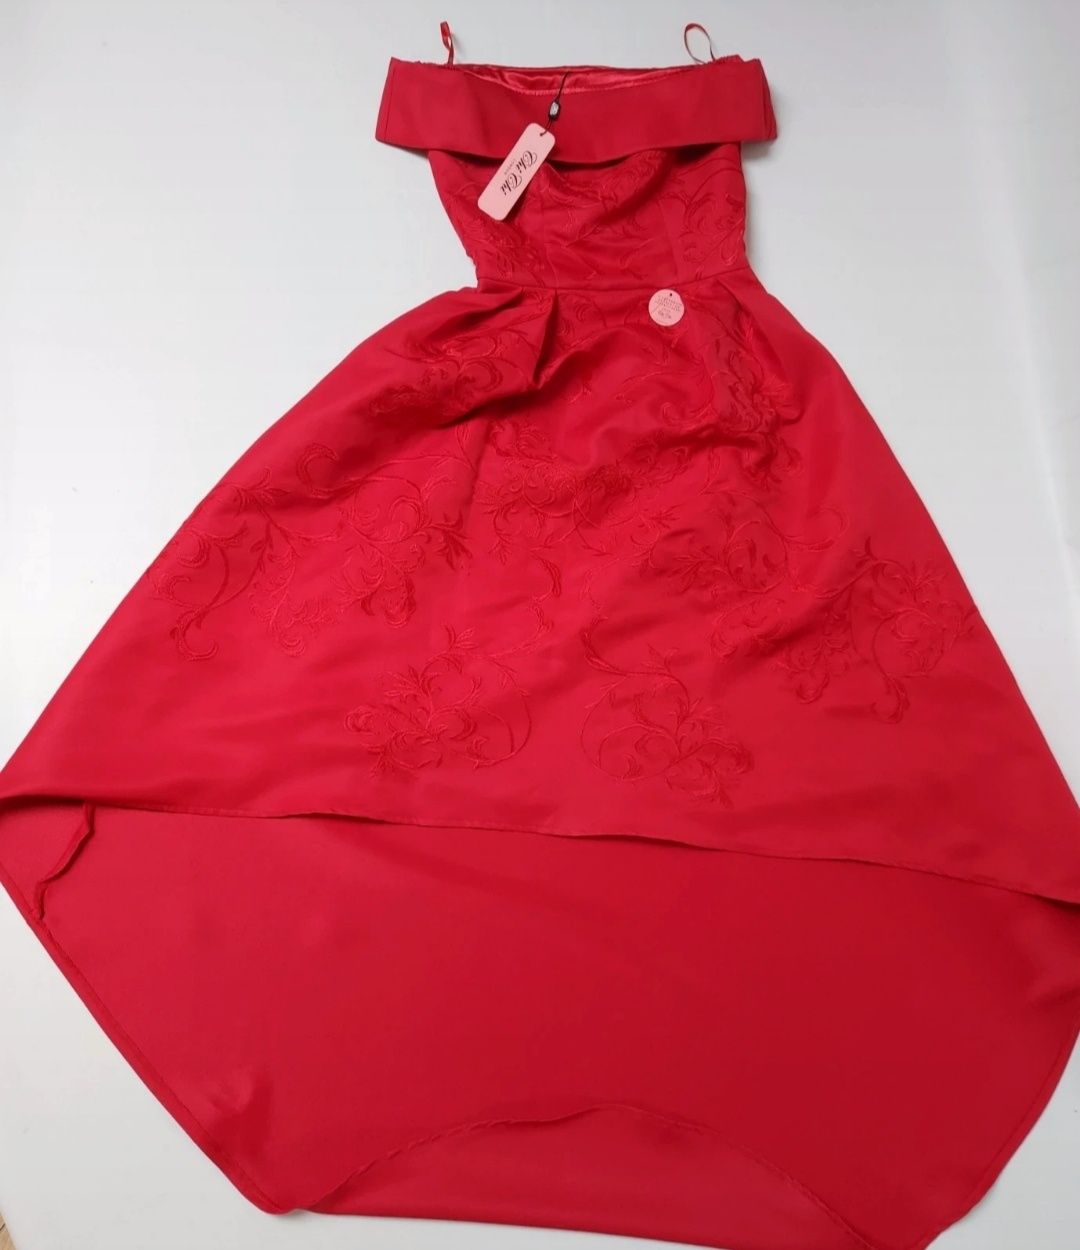 Nowa piękna czerwona suknia balowa asymetryczna hiszpański dekolt S 36